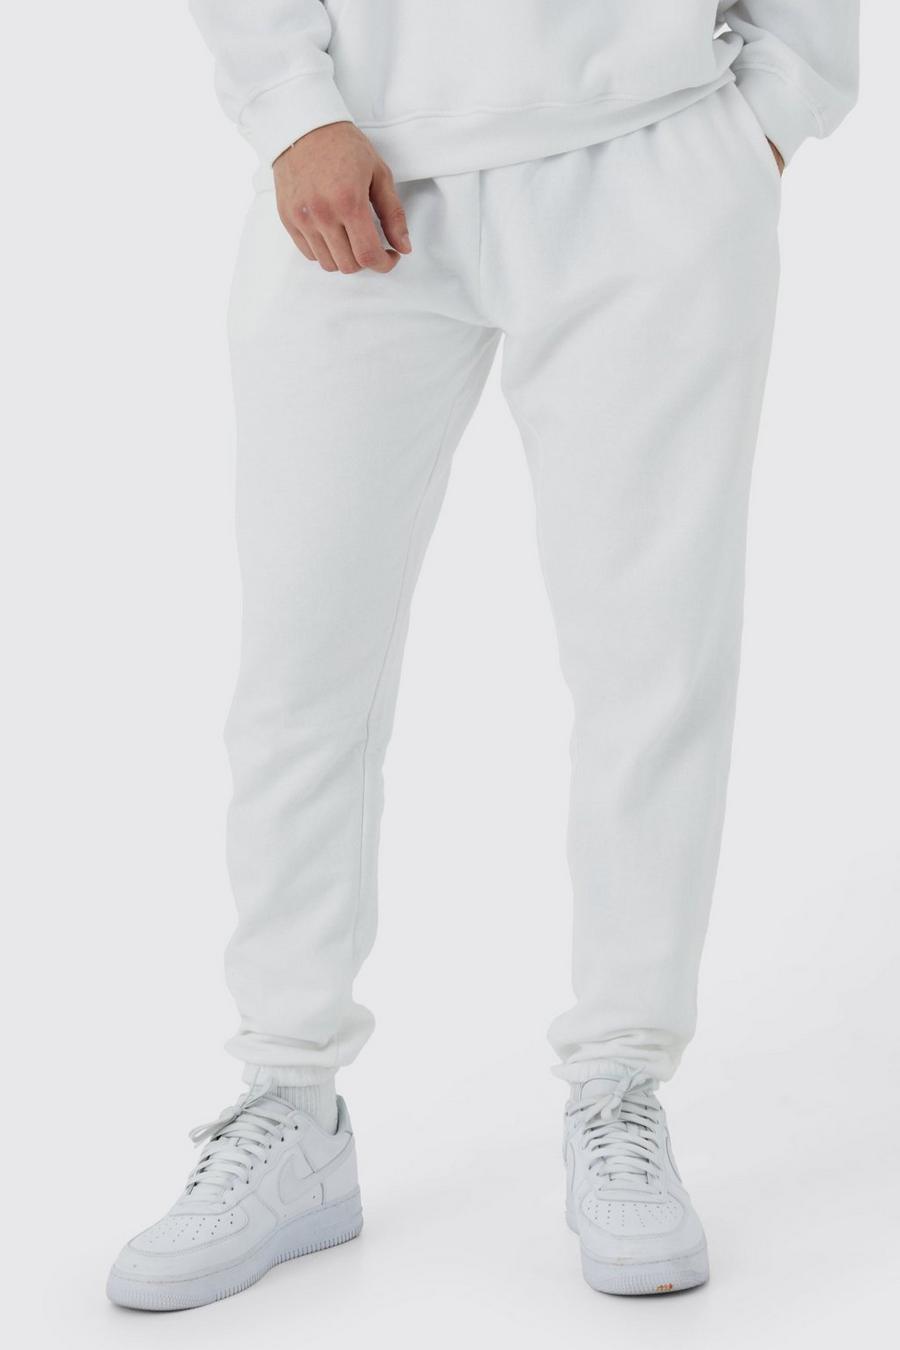 Pantaloni tuta Tall Basic Core Fit, White image number 1